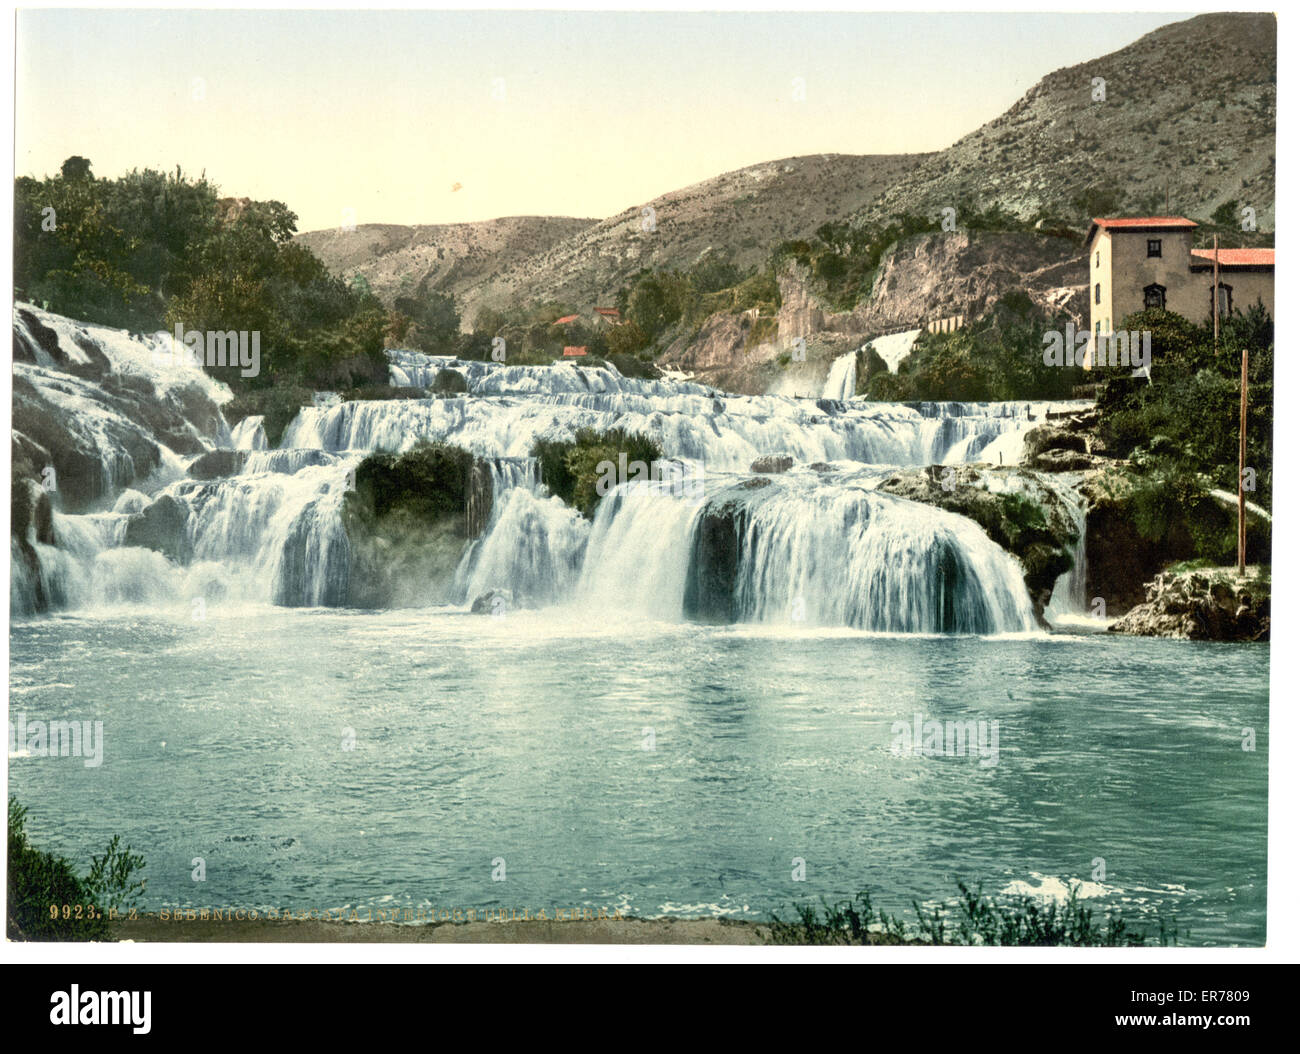 Sebenico, lower falls of the Kerka, Dalmatia, Austro-Hungary. Date between ca. 1890 and ca. 1900. Stock Photo